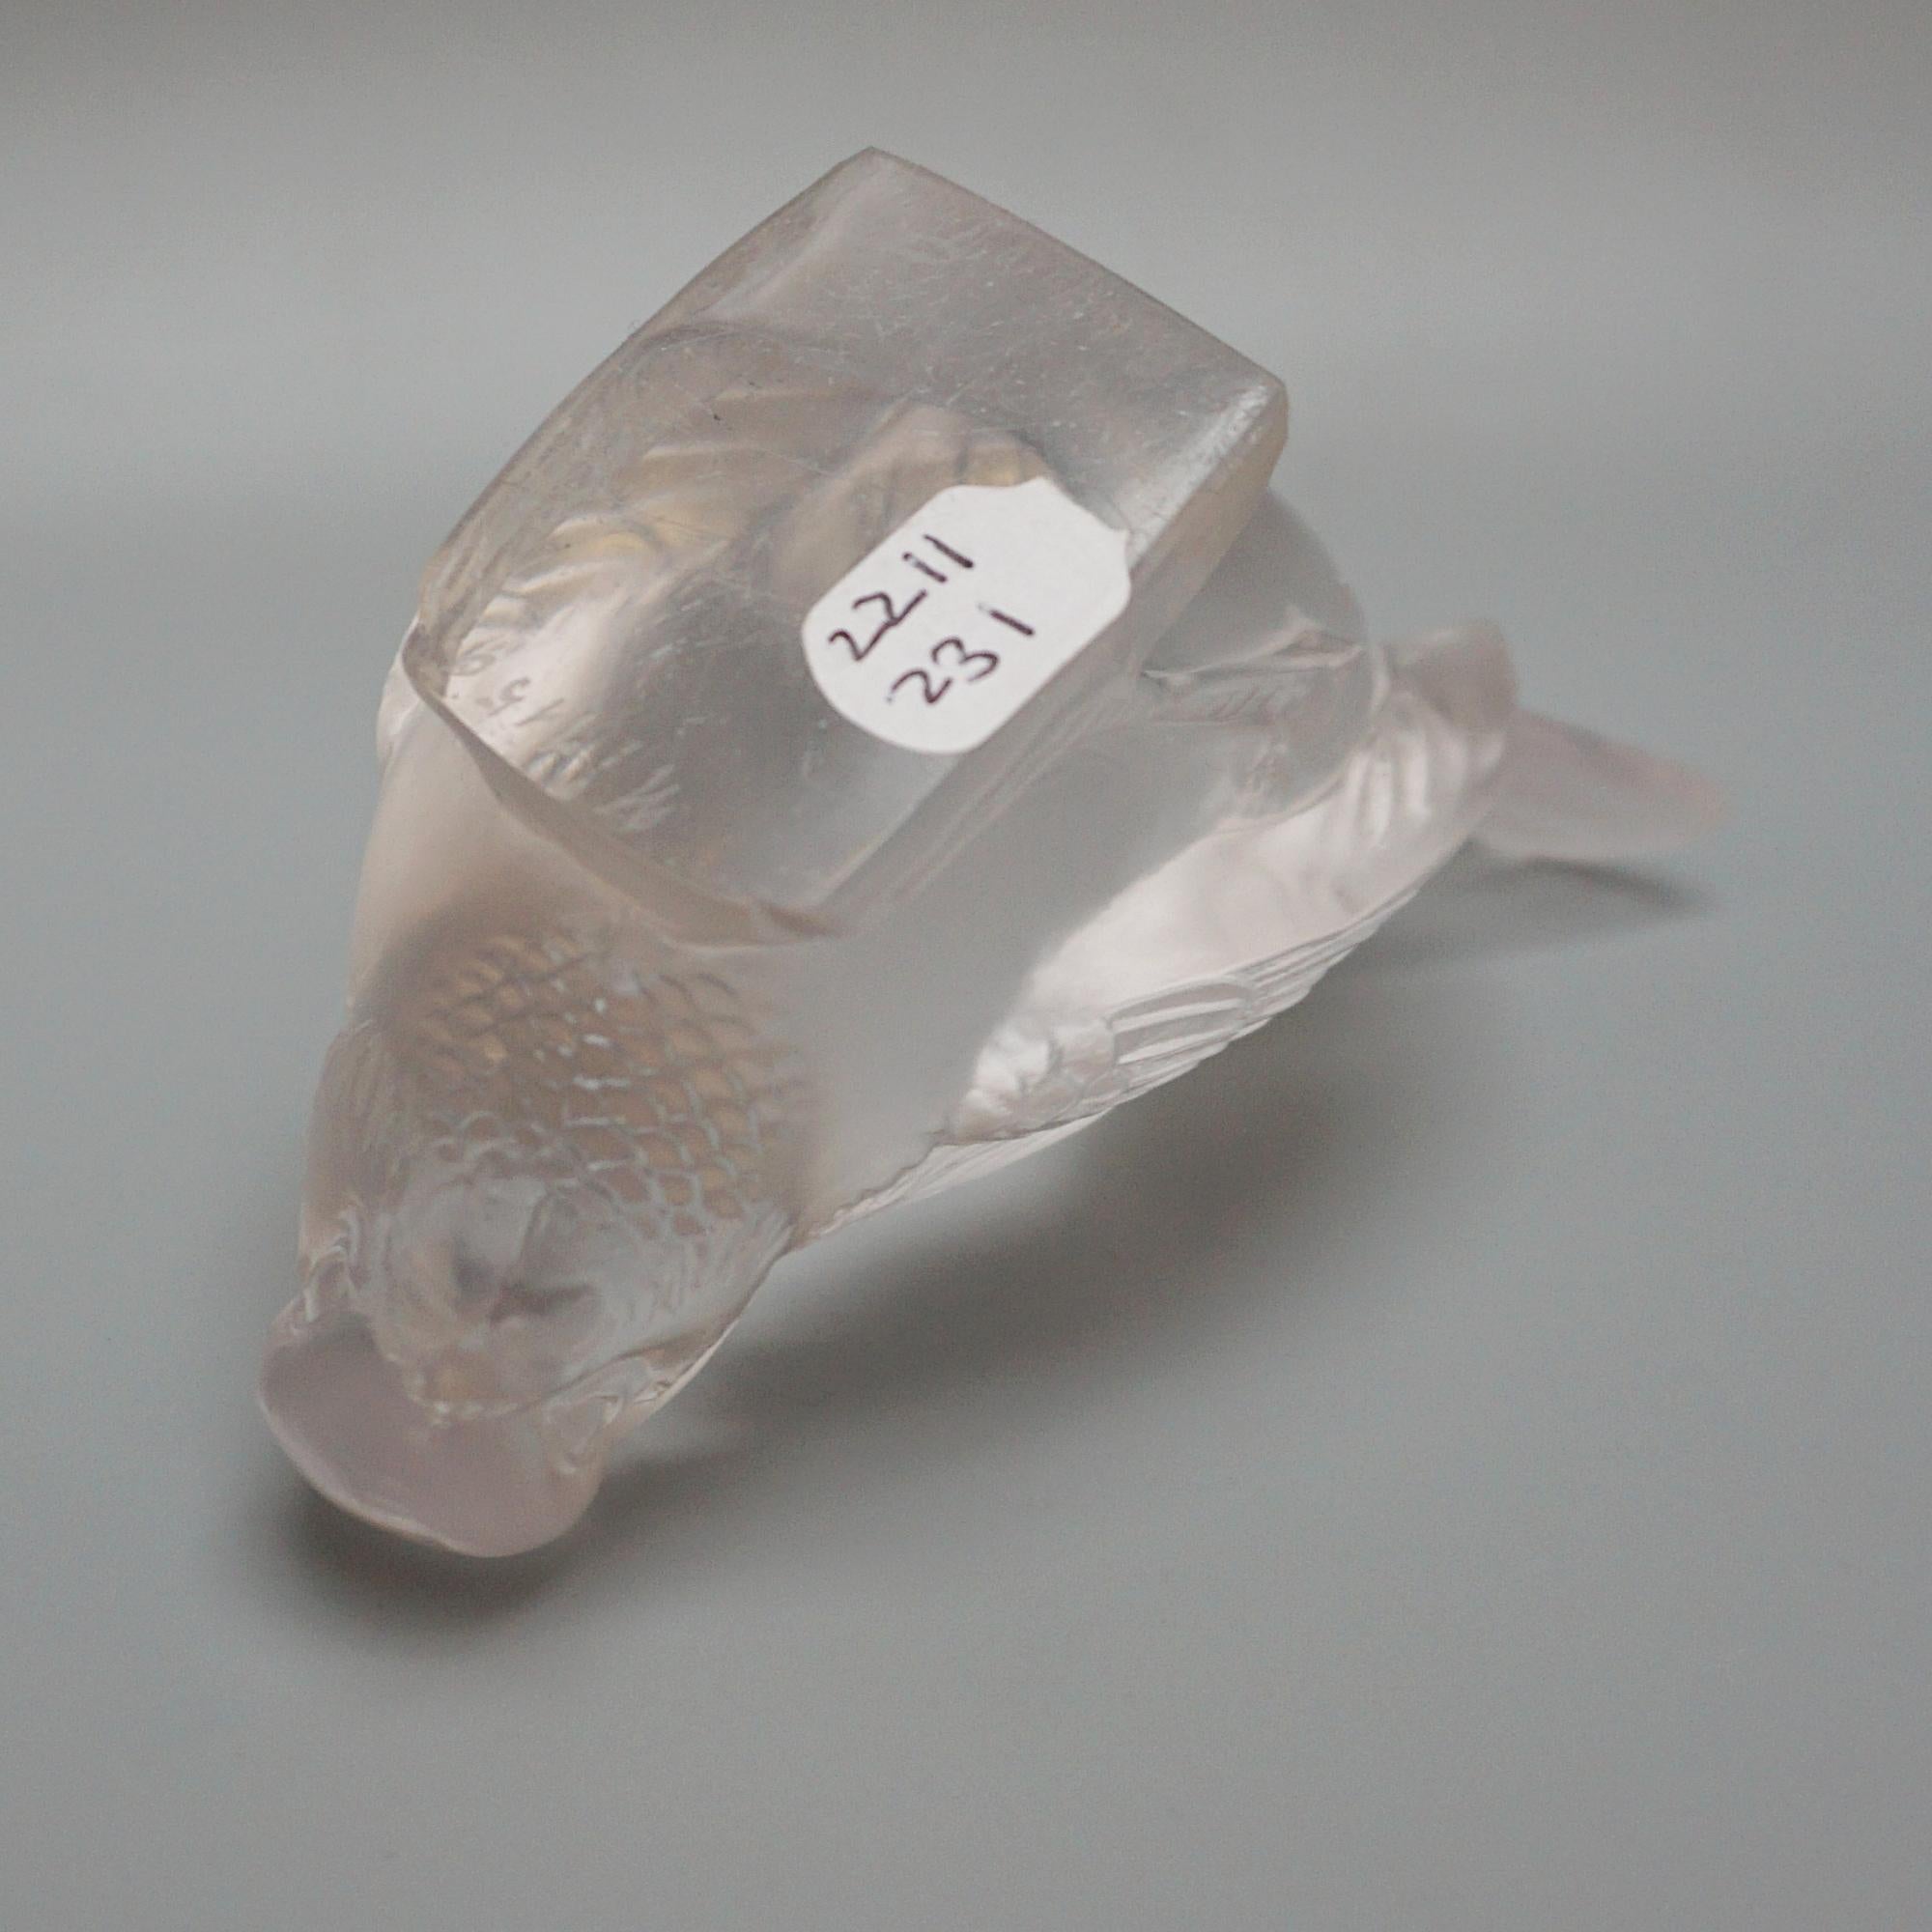  Moineau Hardi, ein Vogel-Briefbeschwerer aus Glas im Art déco-Stil von René Lalique (1860-1945). Eine Milchglasfigur eines Spatzen, der nach Futter pickt. Modellnummer 1150. Schablone geätzt R Lalique France auf der Unterseite. 

Literatur: